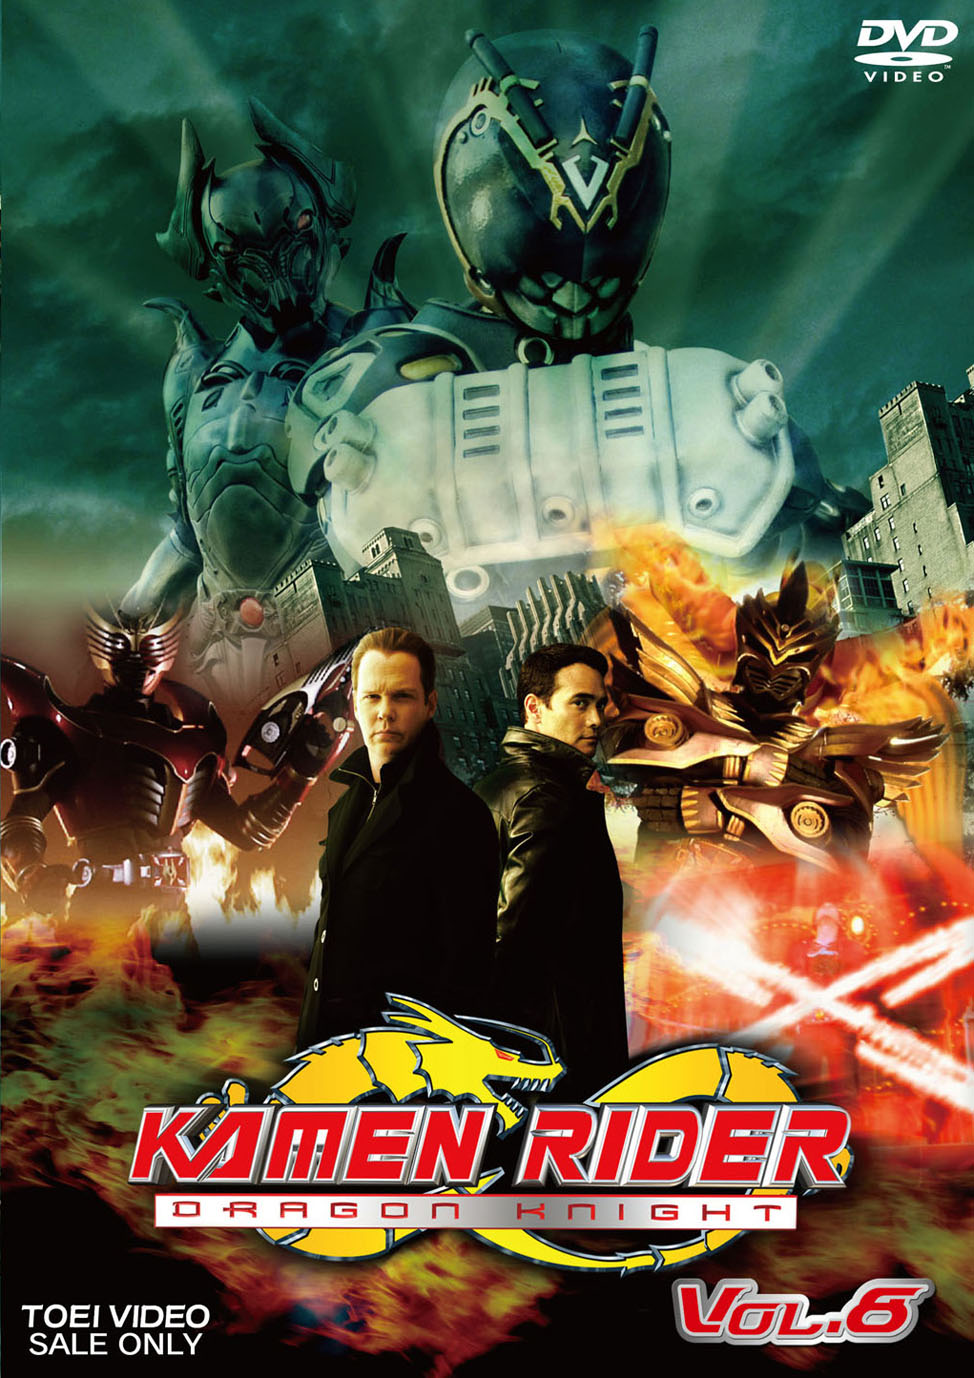 KAMEN RIDER DRAGON KNIGHT VOL.5 [DVD] wyw801m